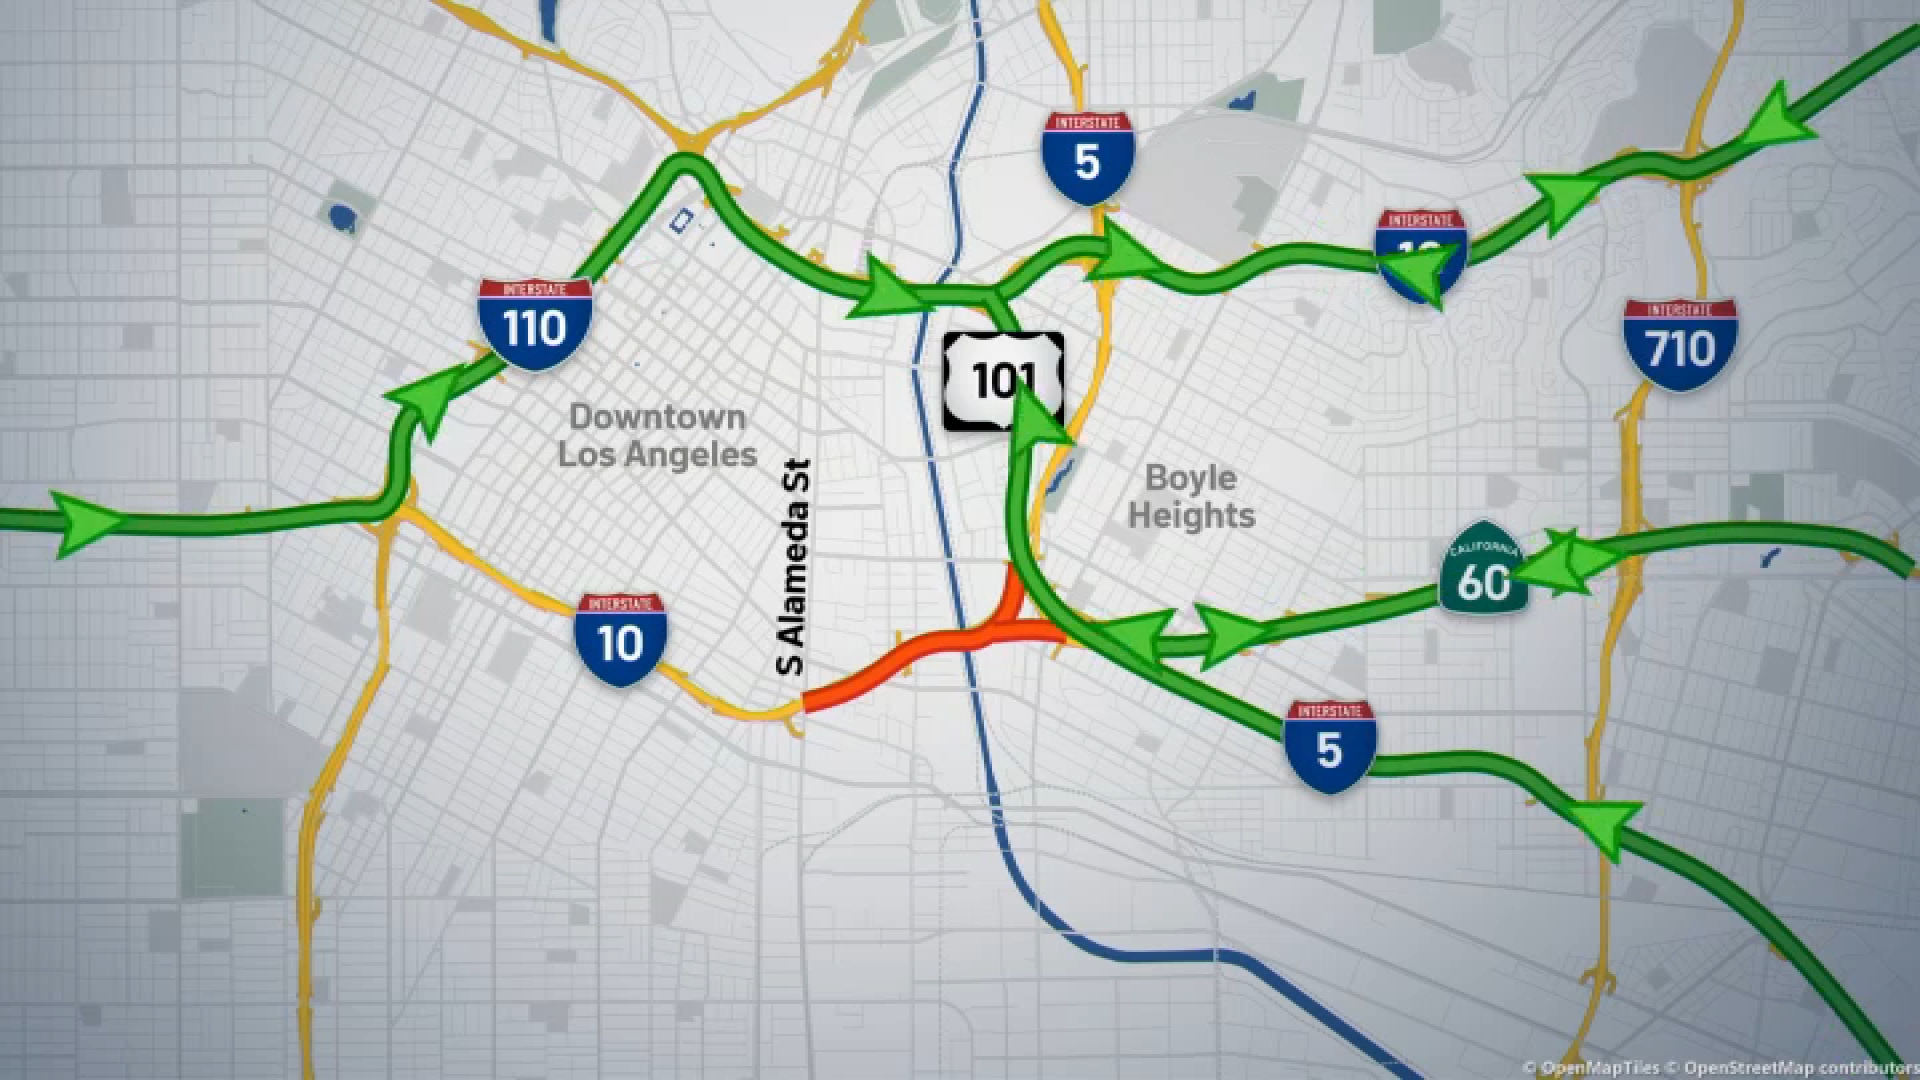 Itinéraires alternatifs pour les conducteurs à la suite de l’incendie de l’autoroute 10 – NBC Los Angeles